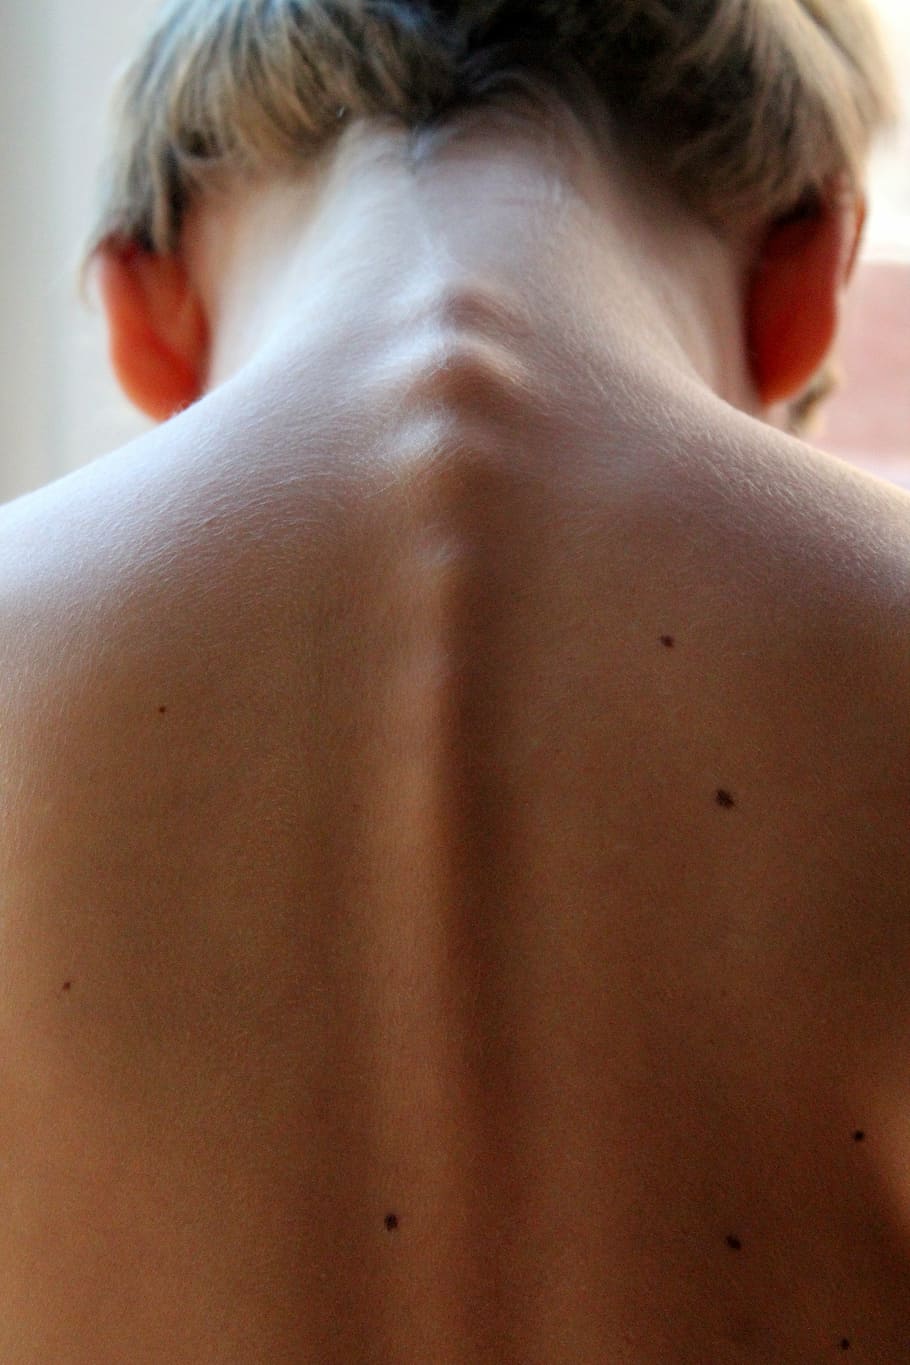 coluna vertebral da mulher, coluna vertebral, cabelo, costas, neo, criança, vista traseira, parte do corpo humano, pele humana, pele